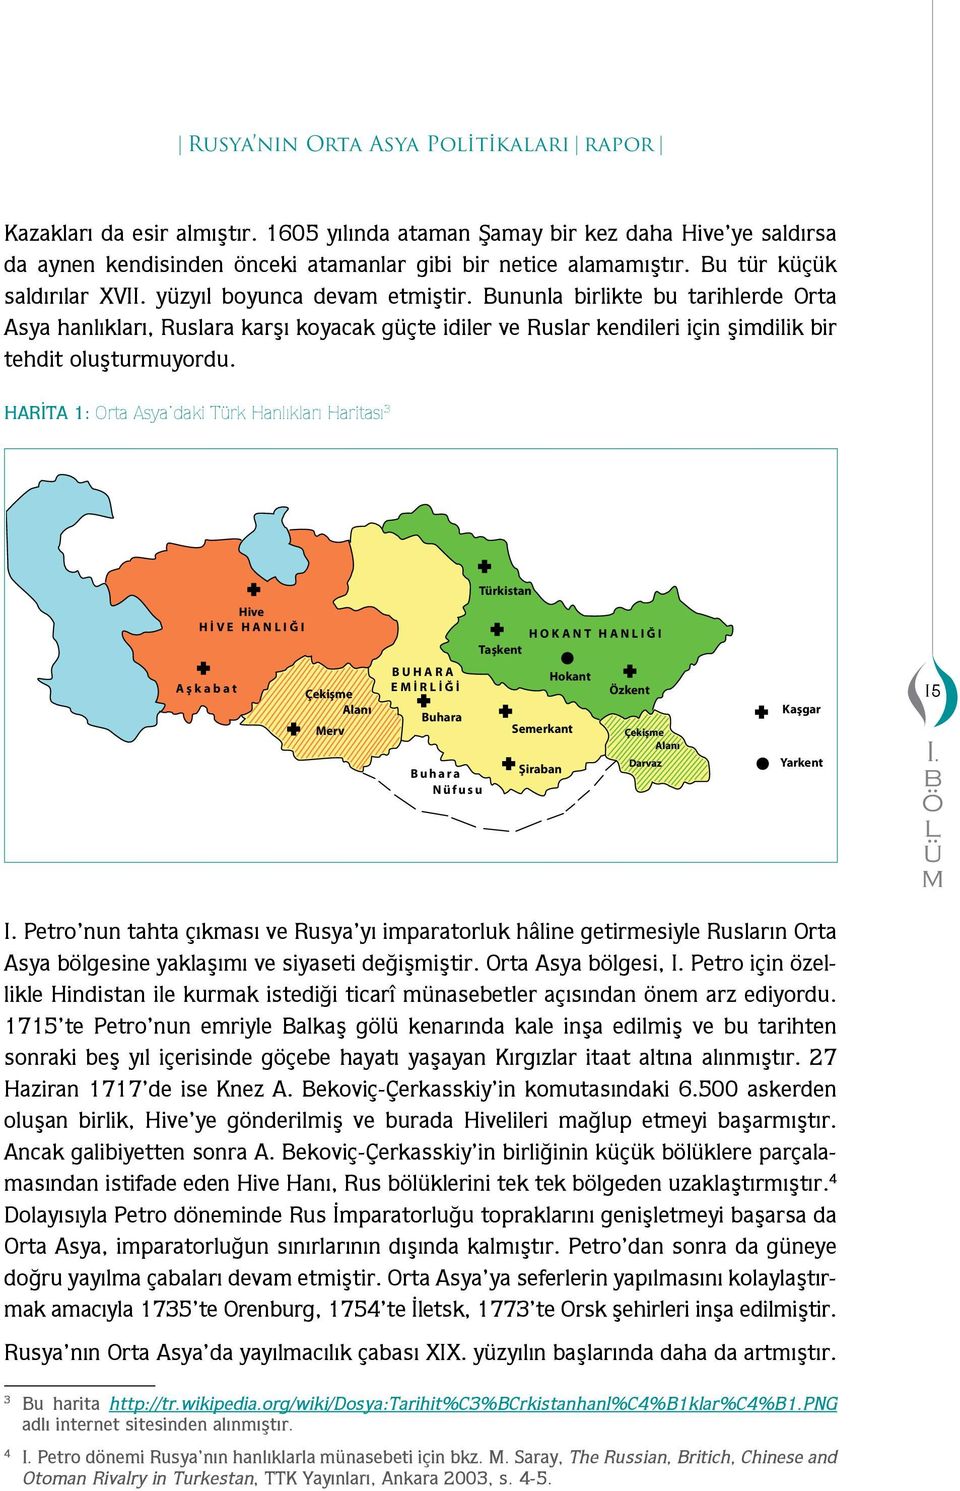 HARİTA 1: Orta Asya daki Trk Hanlıkları Haritası 3 Trkistan Hive HİVE HANLIĞI HOKANT HANLIĞI Taşkent Aşkaat Çekişe Alanı Merv BUHARA EMİRLİĞİ Buhara Buhara Nfusu Seerkant Şiraan Hokant Özkent Çekişe